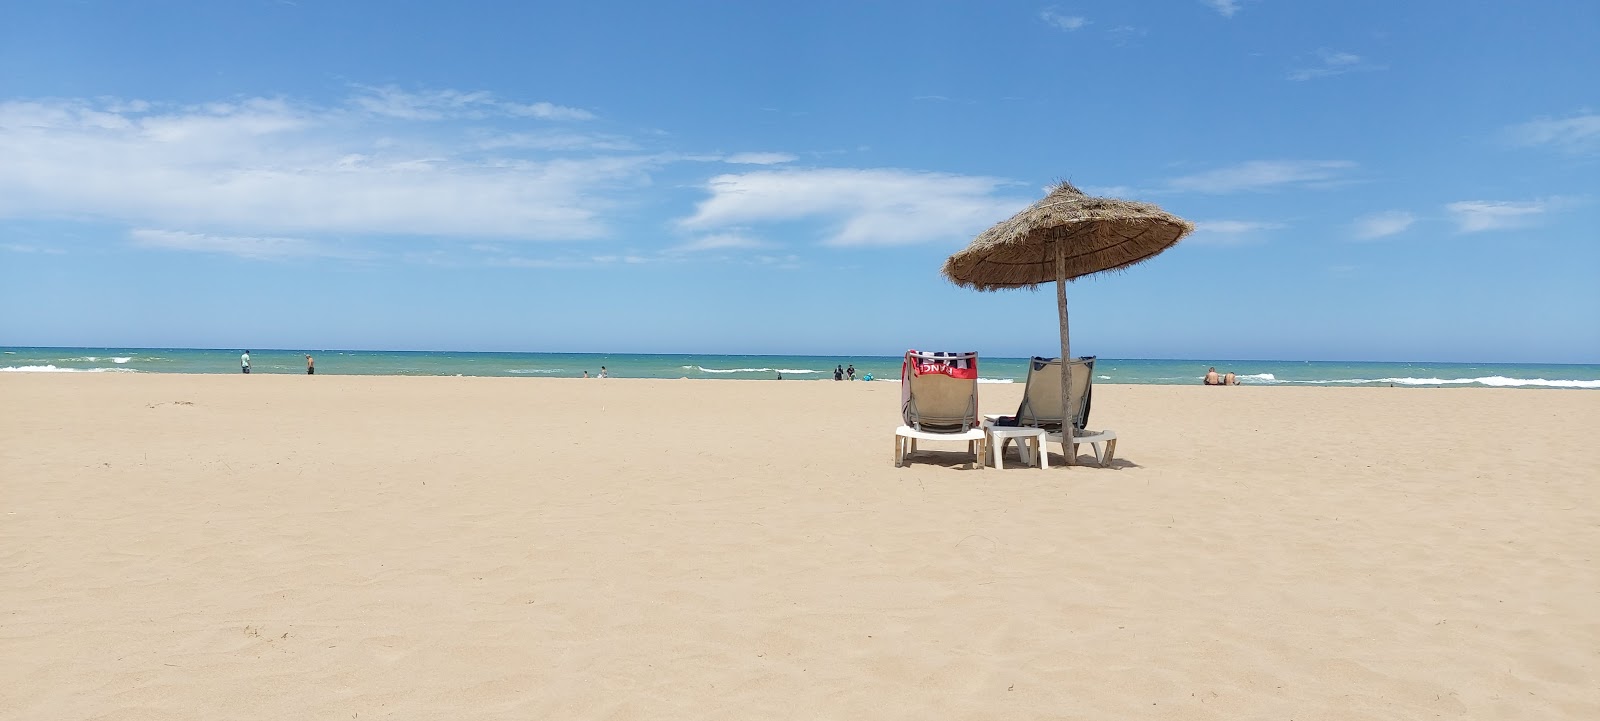 Φωτογραφία του Melia beach με φωτεινή άμμος επιφάνεια